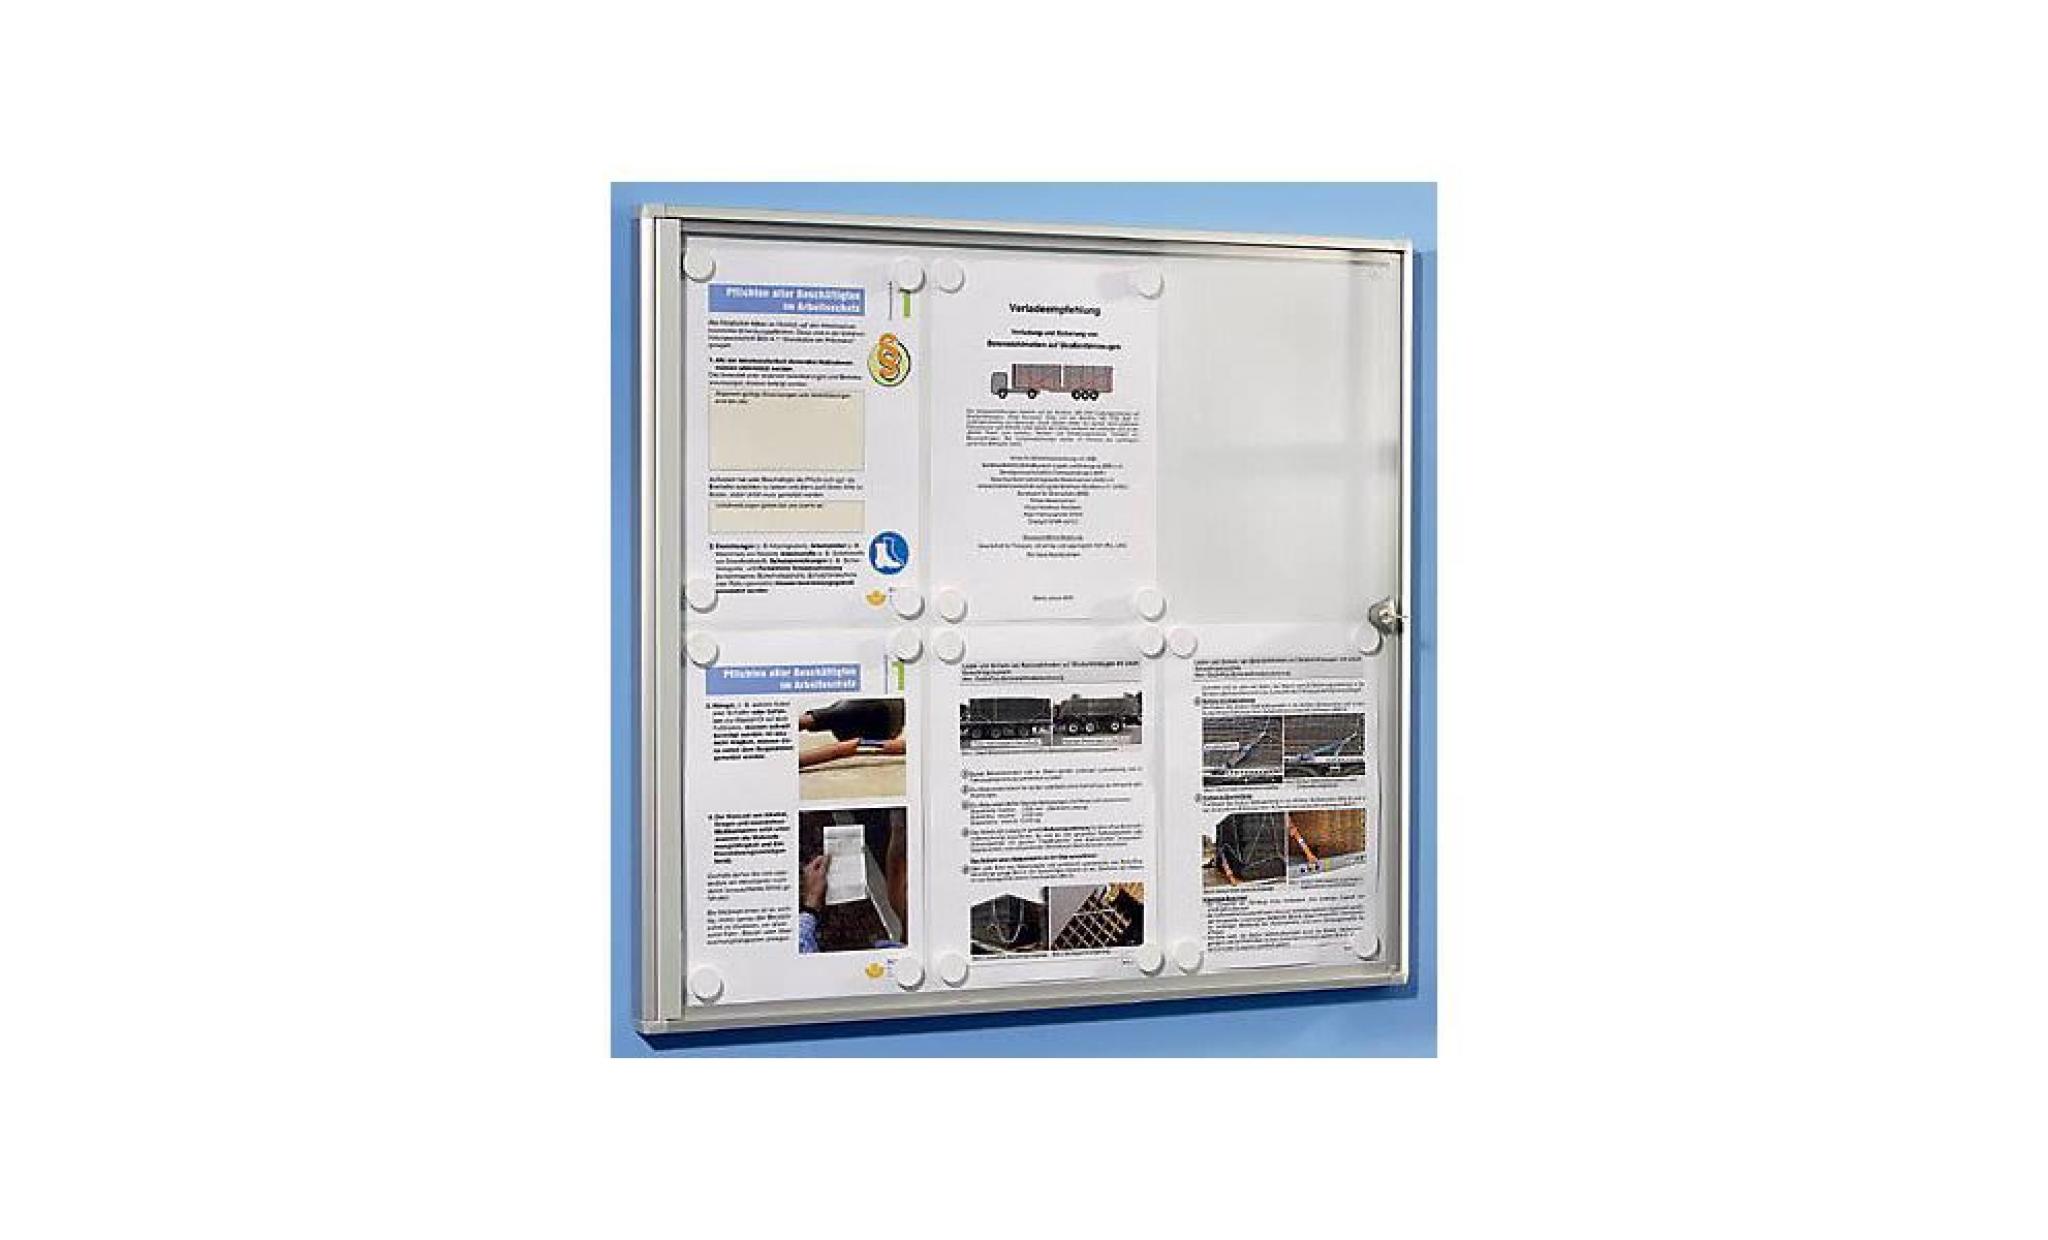 office akktiv vitrine d'affichage pour l'intérieur   fond en liège 4 feuilles a4, h x l 655 x 491 mm   panneau d'affichage